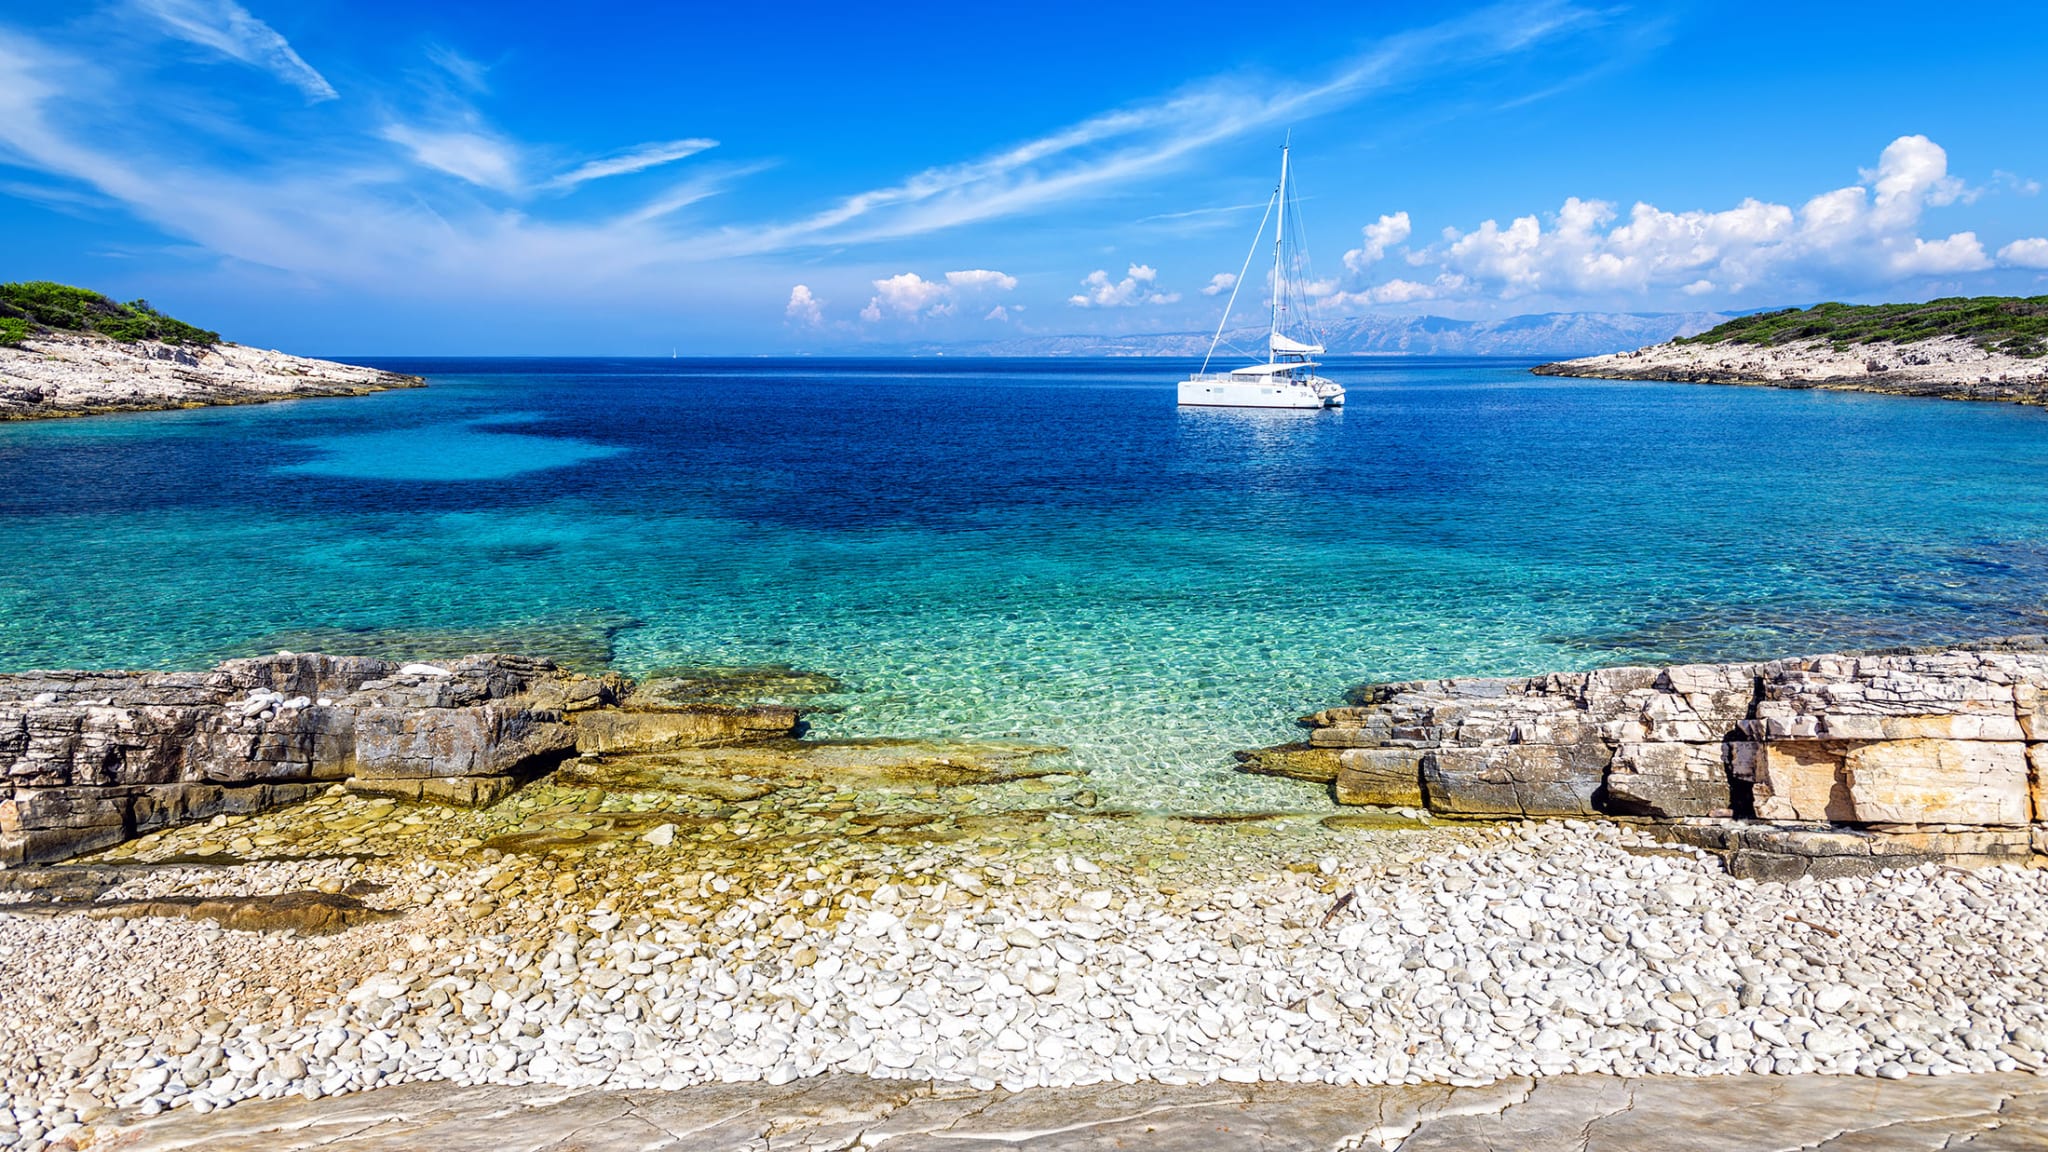 Einfach schön – Kiesstrand auf dem kleinen Eiland Proizd nahe der dalmatinischen Insel Korčula © Kroatische Zentrale für Tourismus -  Aleksandar Gospic